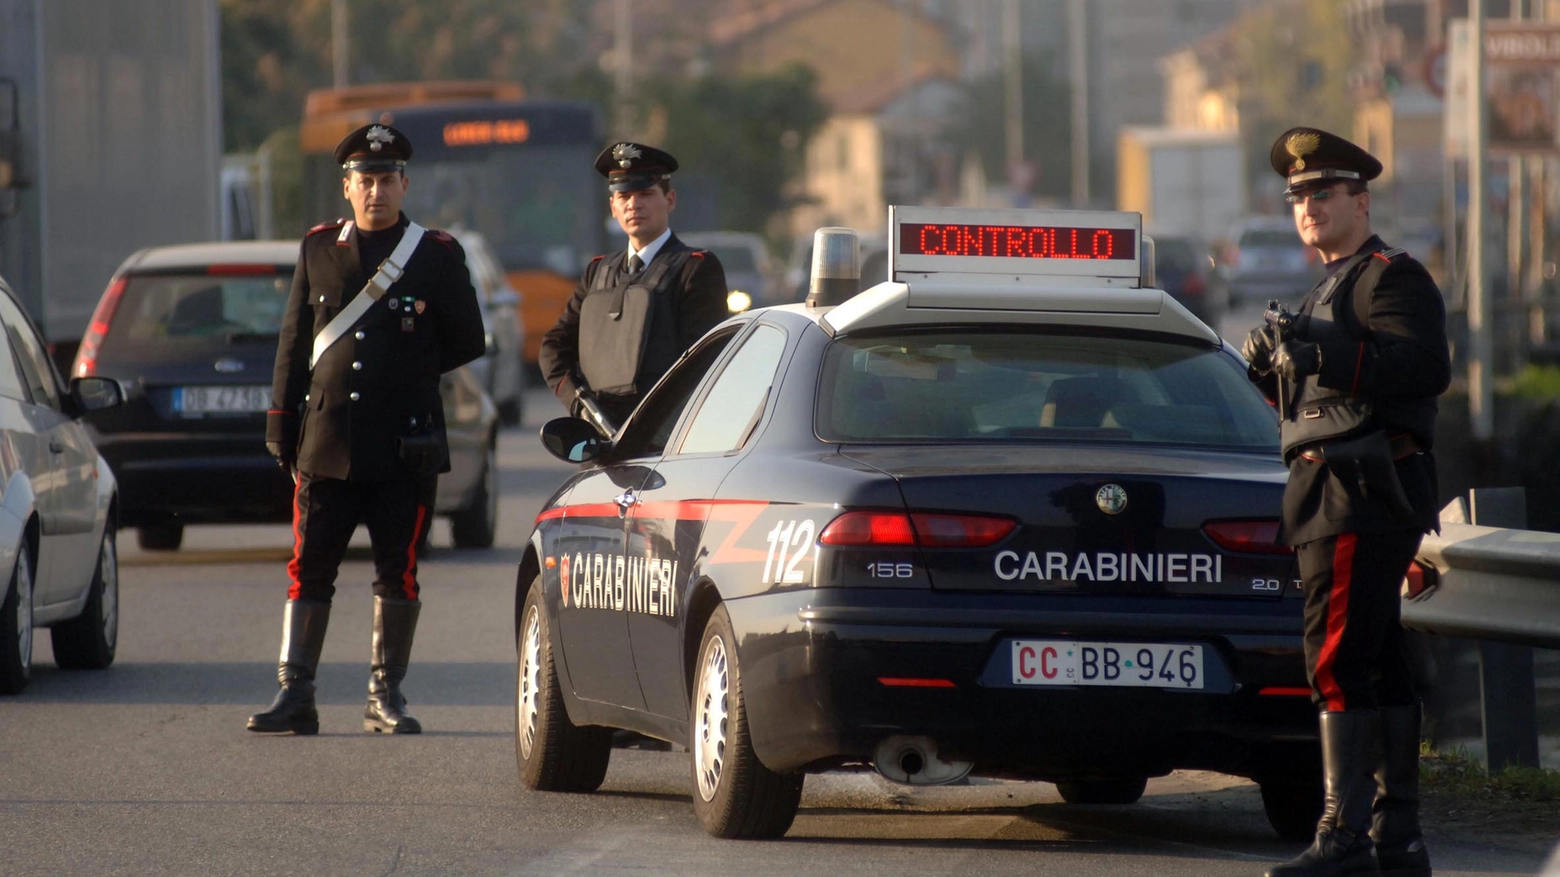 Le indagini sulla aggressione sono affidate ai carabinieri